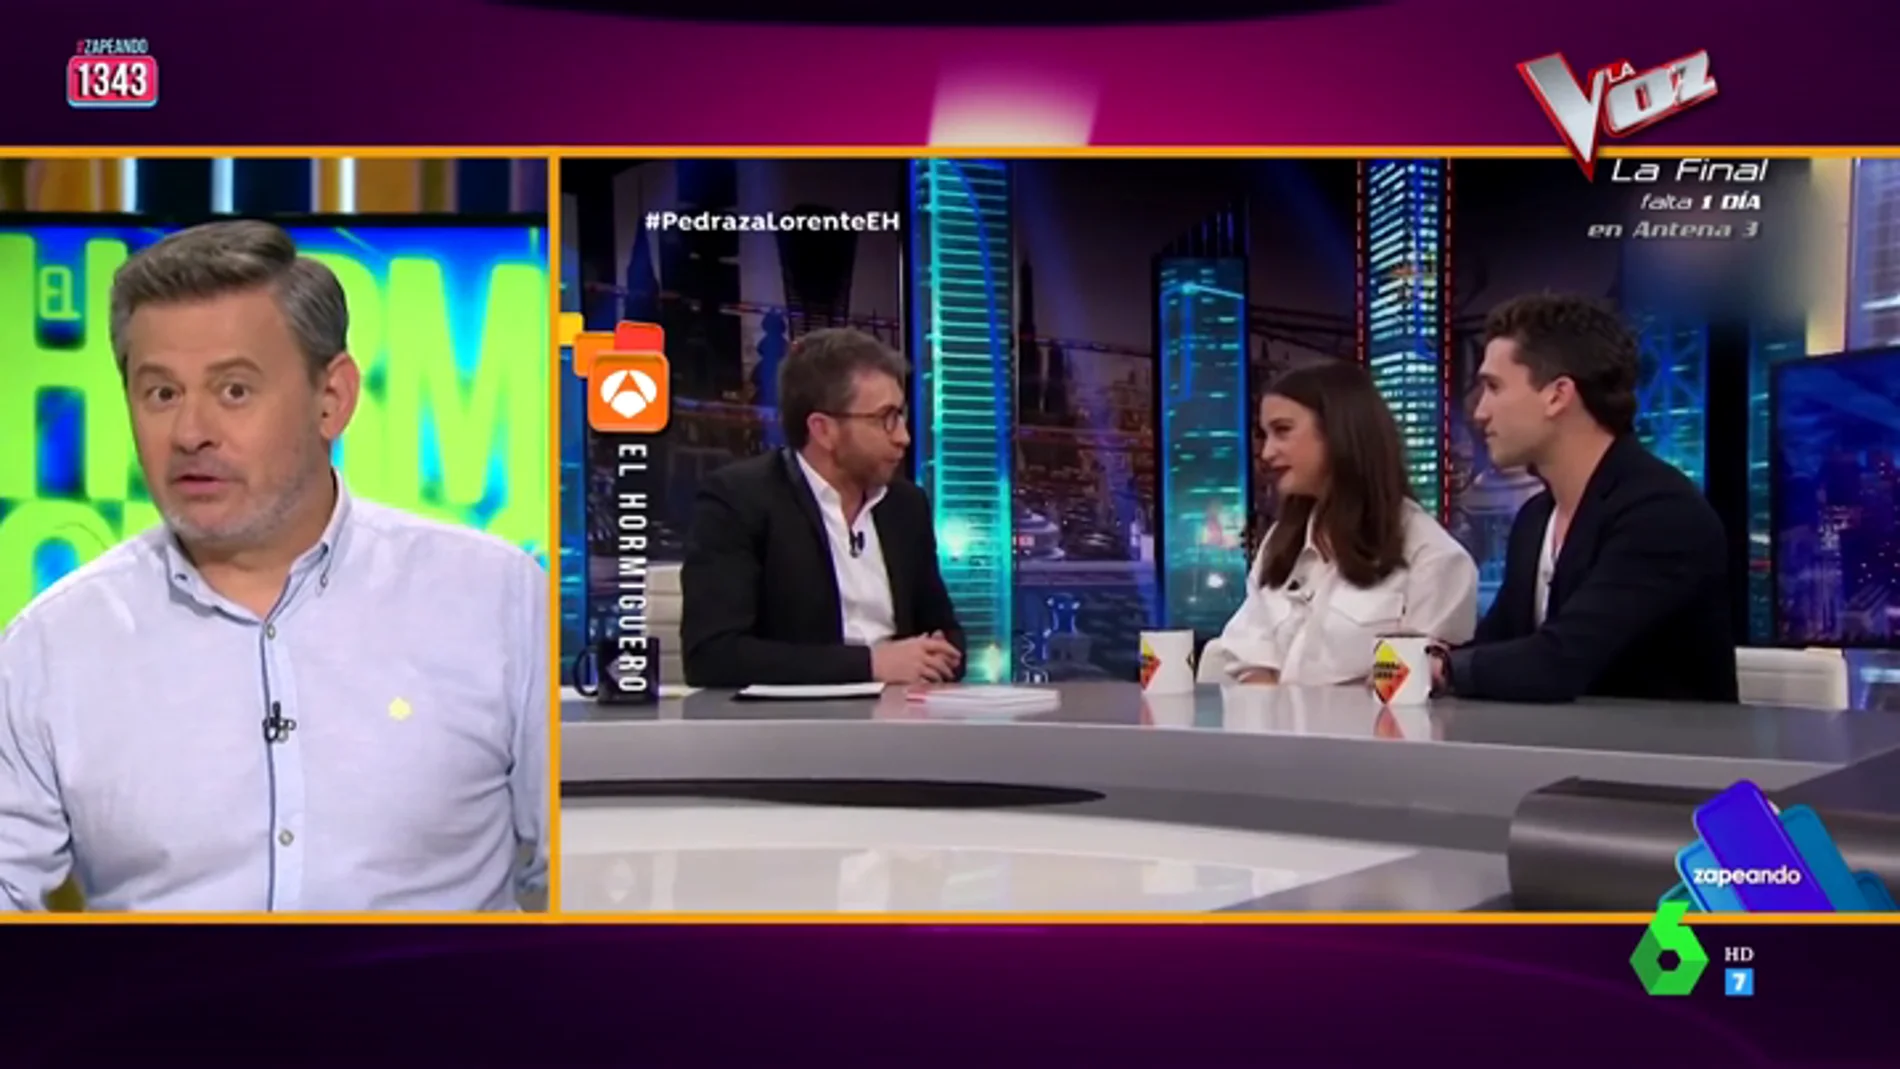 El 'troleo' de María Pedraza y Jaime Lorente a Pablo Motos: "Ahora que lo hemos dejado está feo contarte cómo nos conocimos"